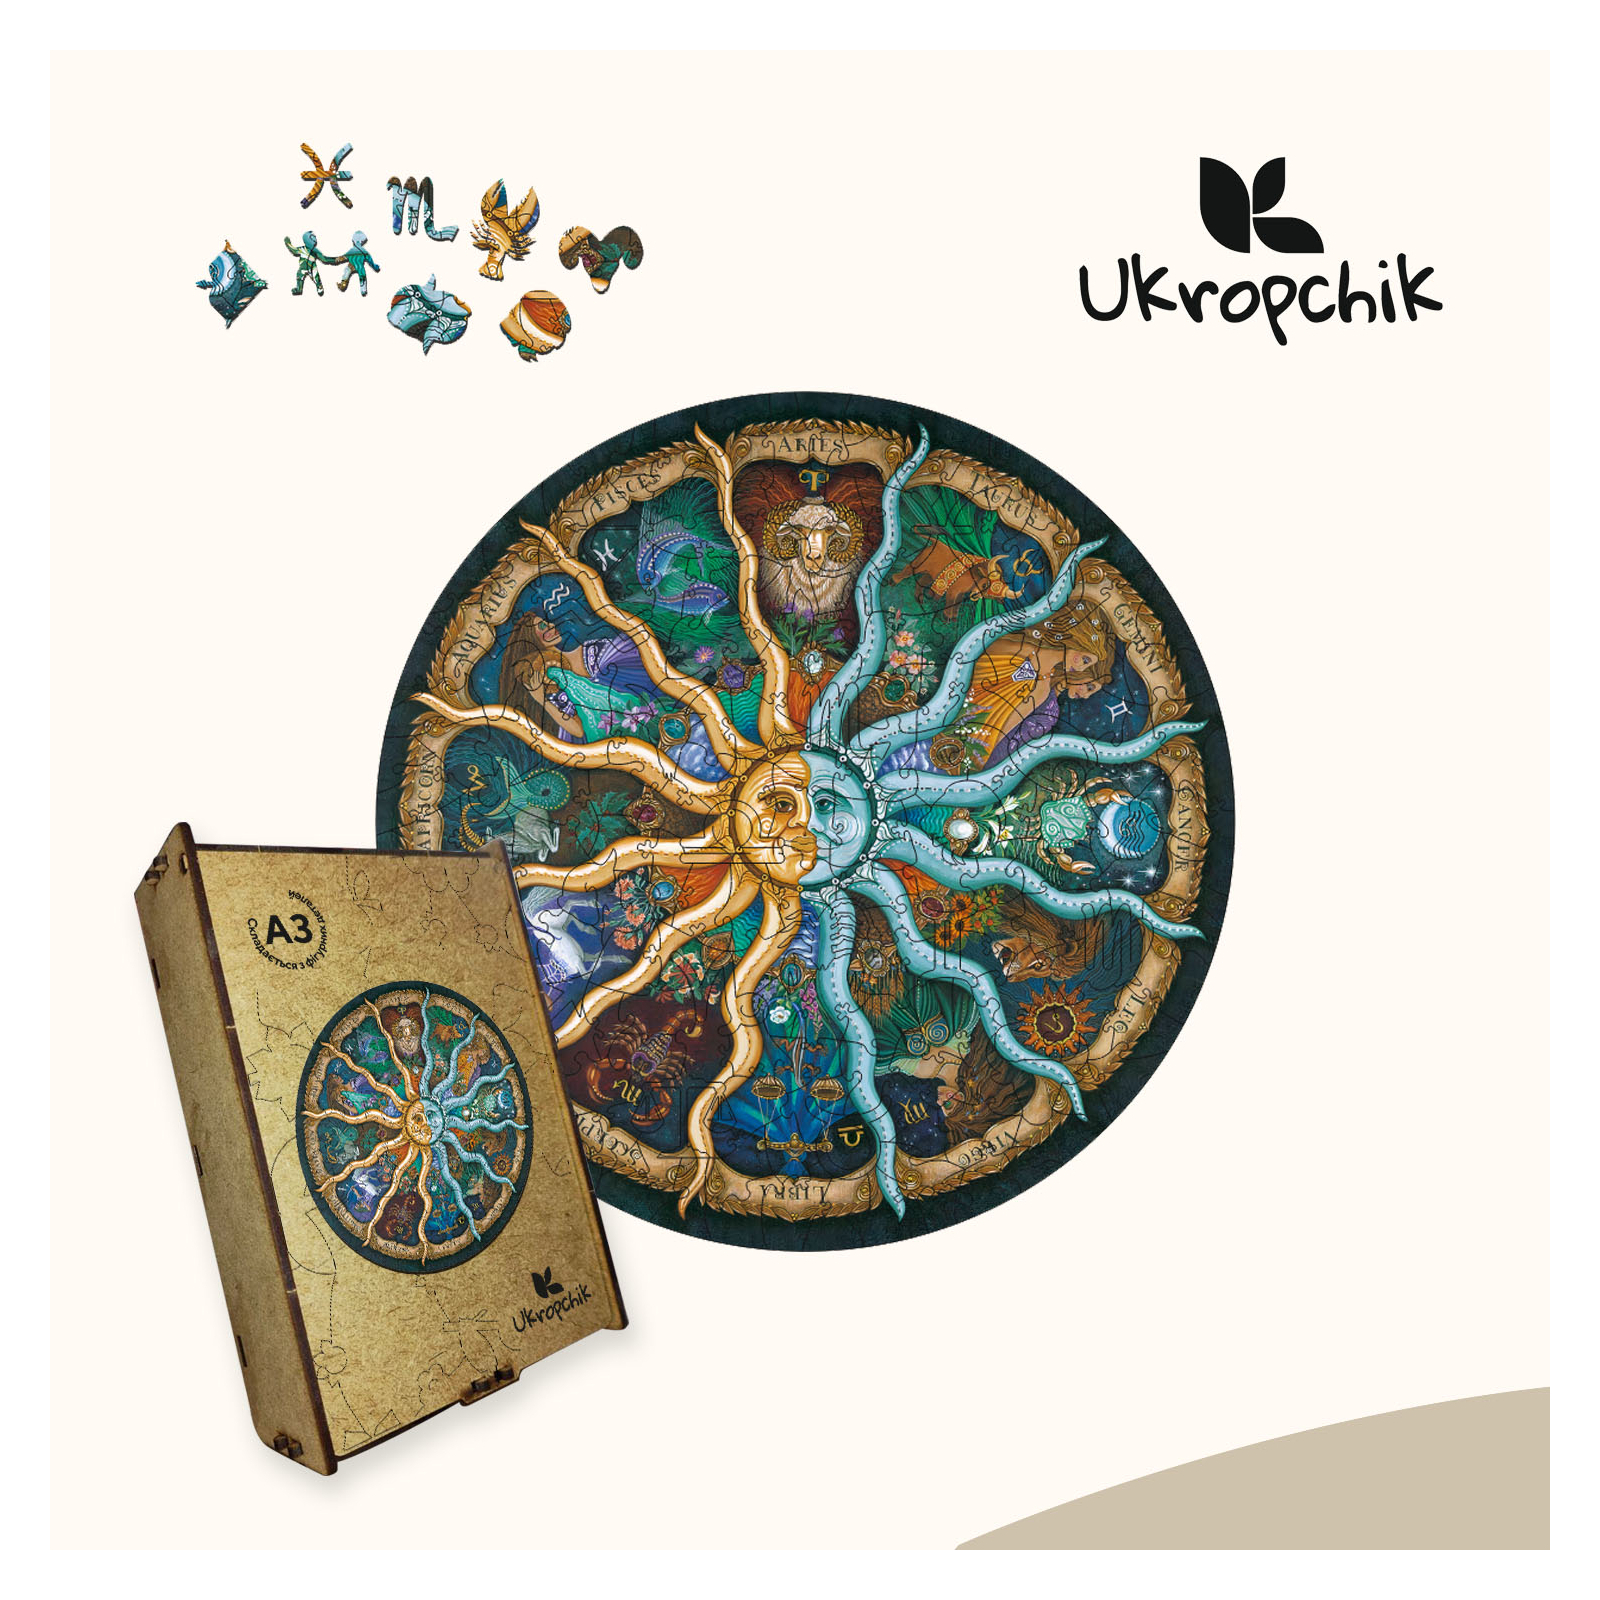 Пазл Ukropchik дерев'яний Таємничий Зодіак size - L в коробці з набором-рамкою (Mysterious Zodiac A3) зображення 5